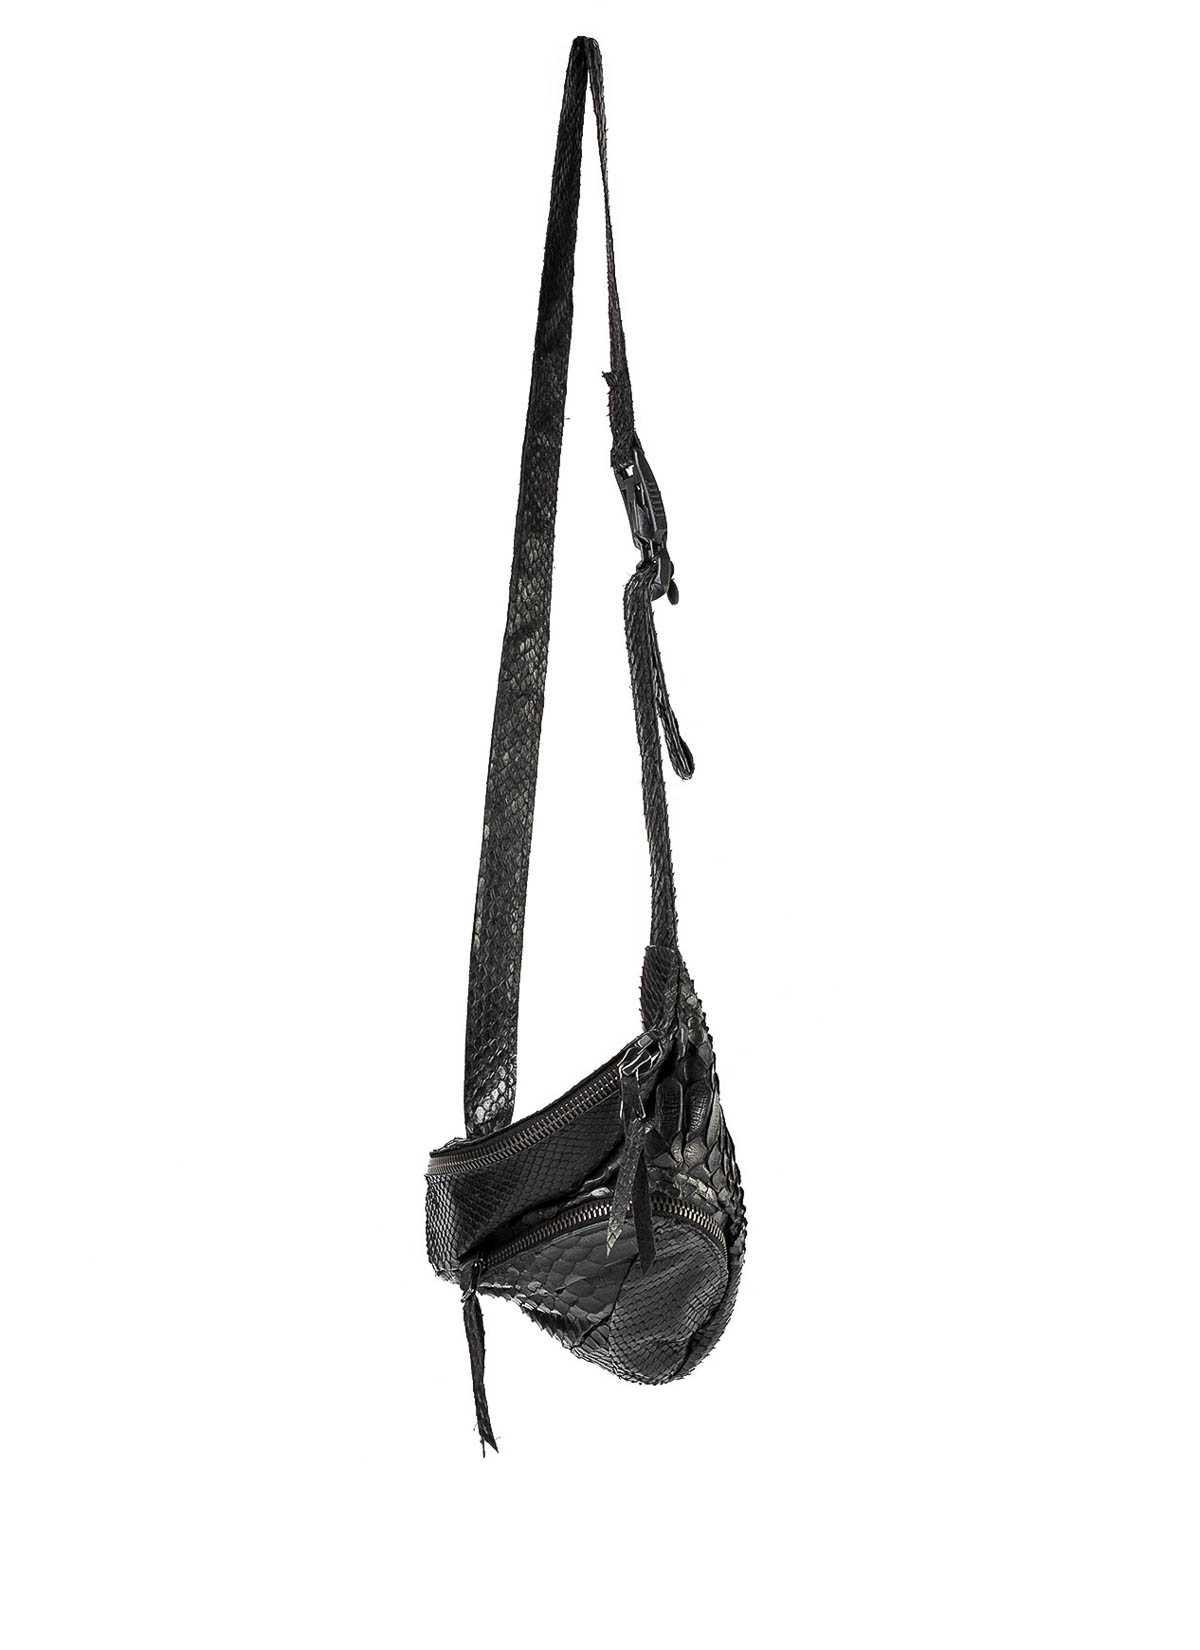 hide-m | LEON EMANUEL BLANCK Dealer Bag, black python leather